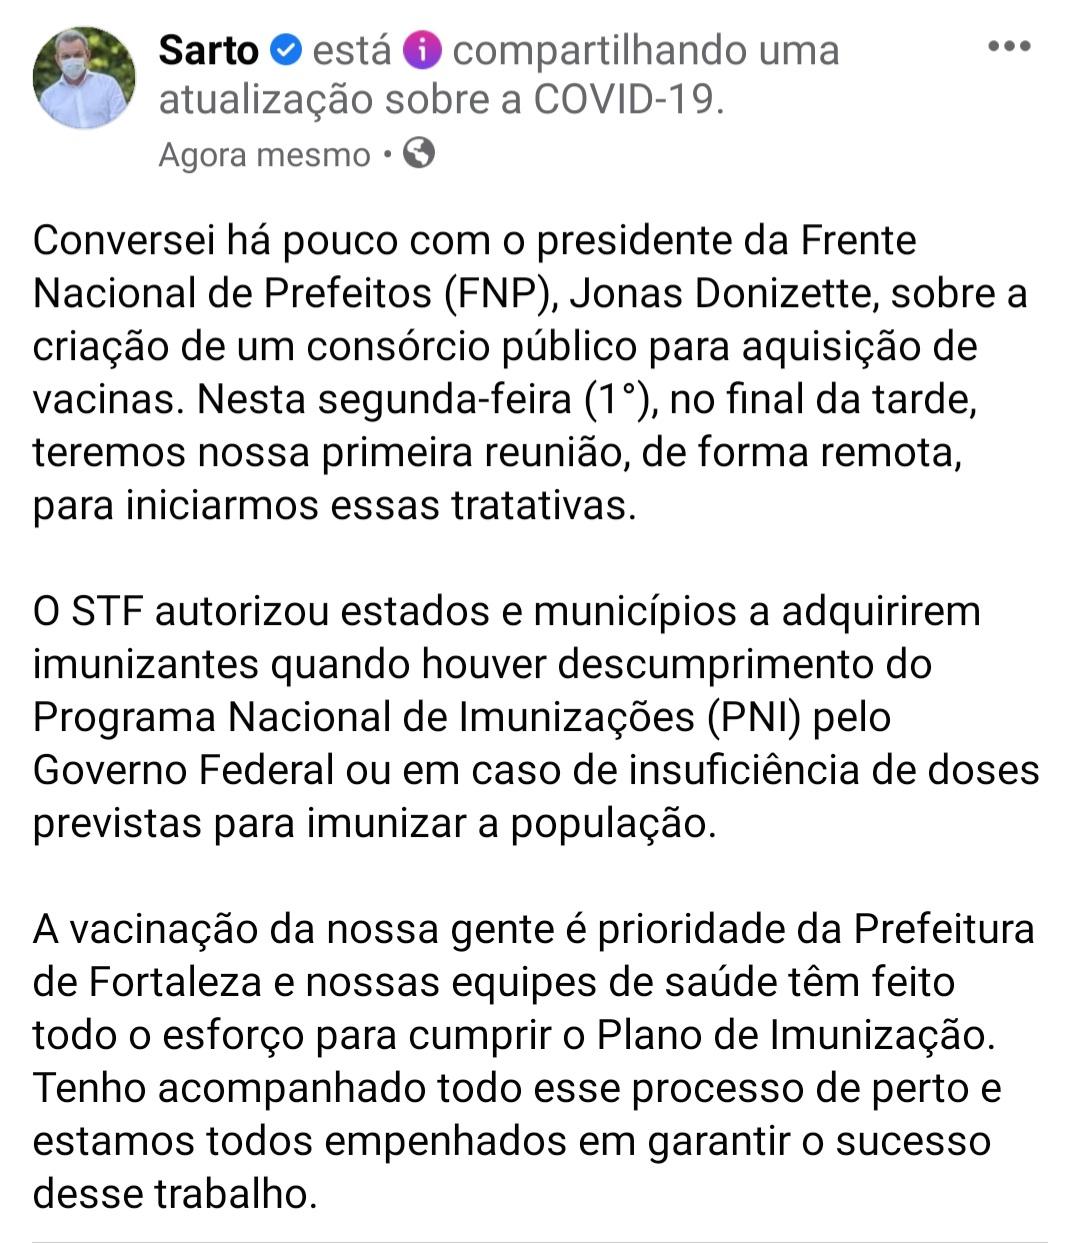 Reprodução do facebook do Sarto Nogueira que fala sobre consórcio de vacinas